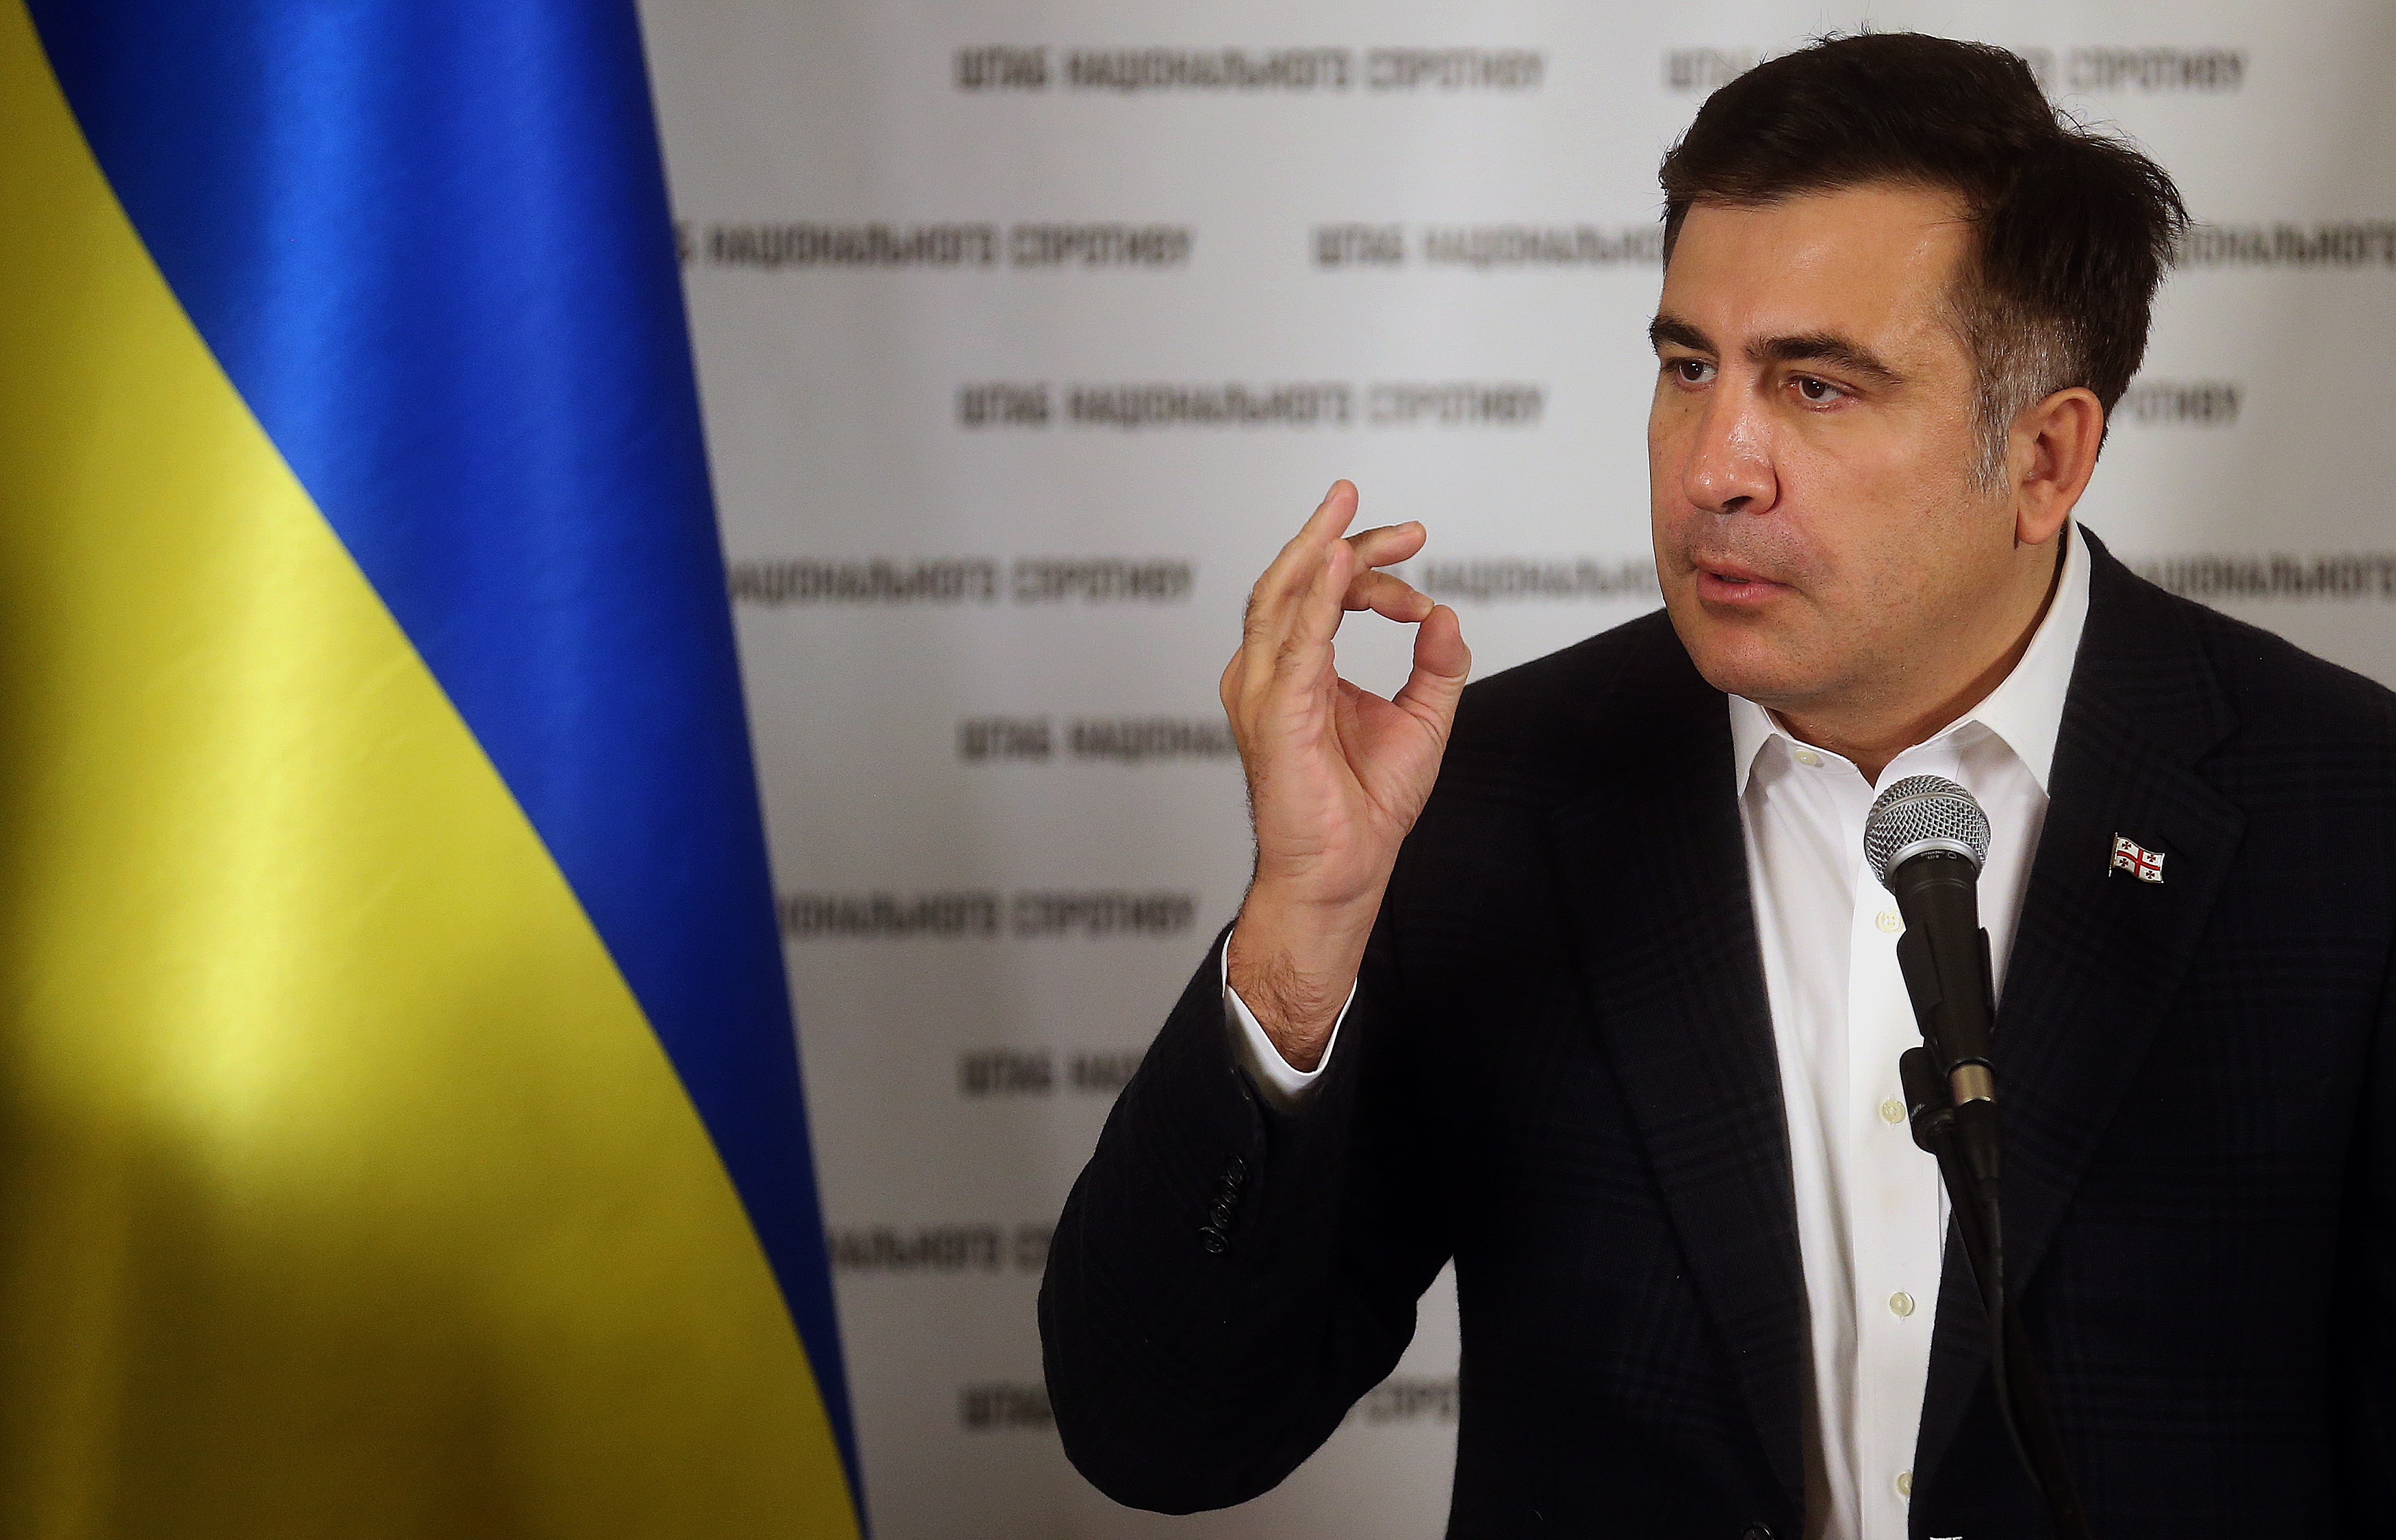 Как встретили Саакашвили: в "Миротворце" бывшего президента Грузии назвали "БОМЖЕМ" и внесли в свои "черные списки" по причине незаконного пересечения им границы Украины